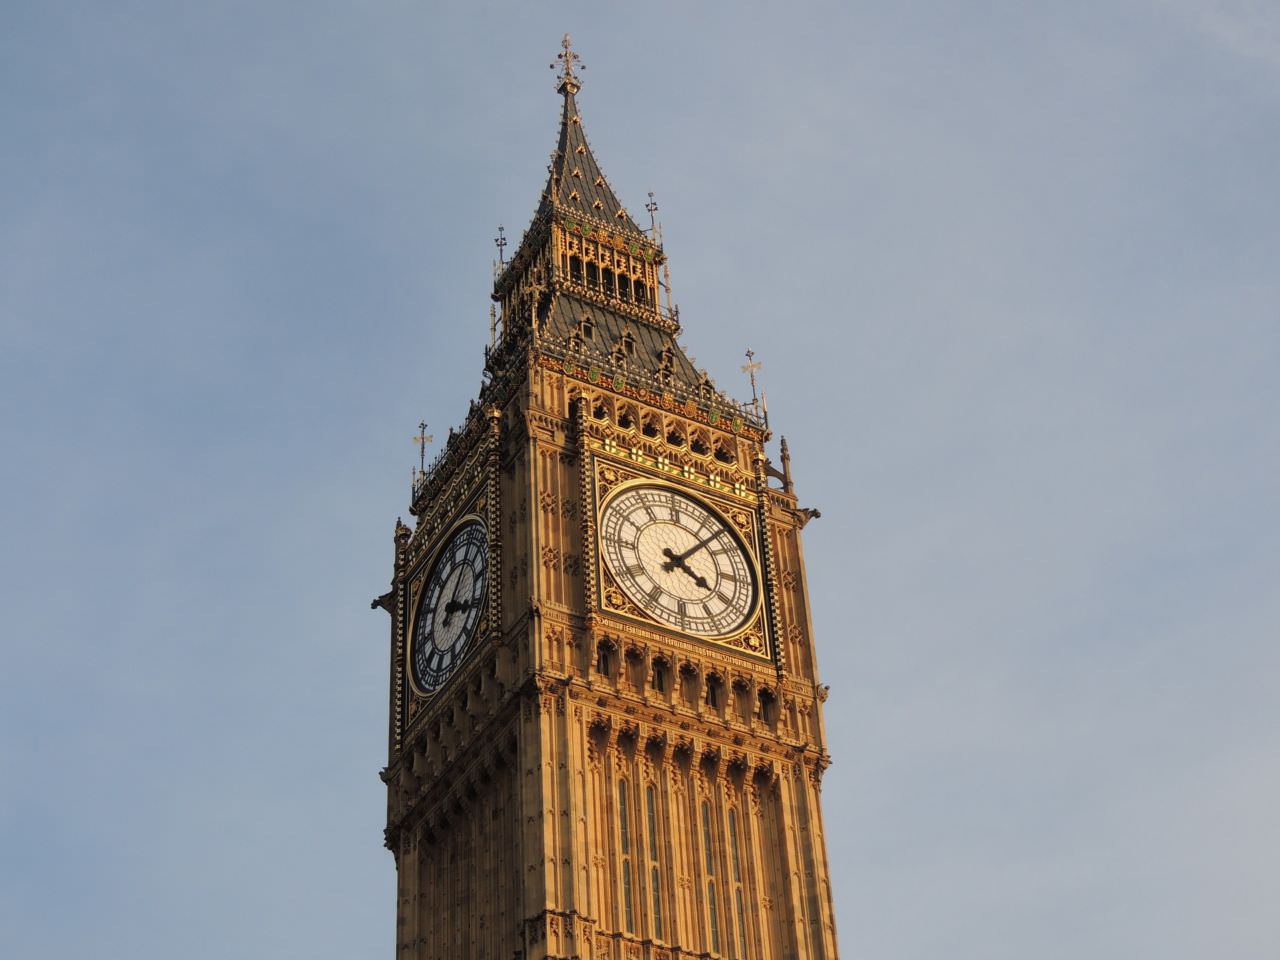 Der Name Big Ben bezeichnet die schwerste der fünf Glocken des berühmten Uhrturms am Palace of Westminster in London